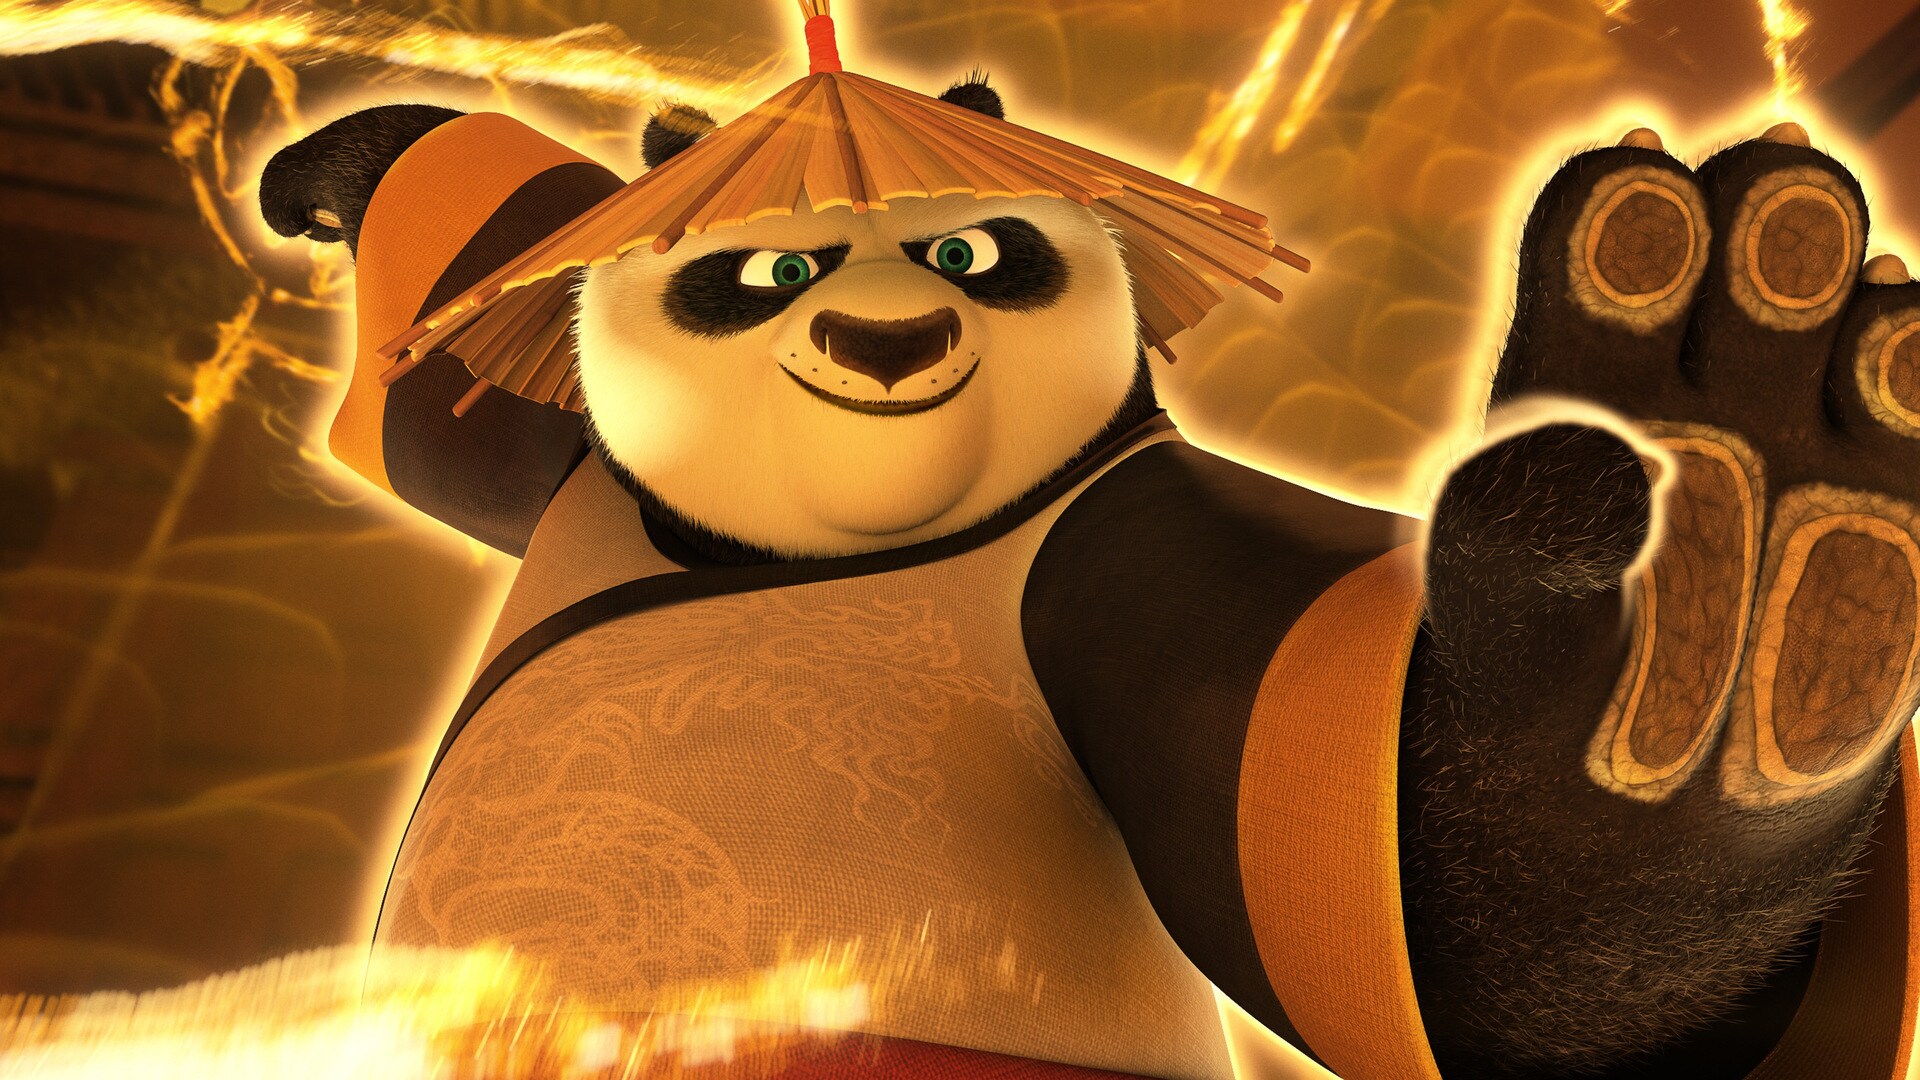 
<span>Kung Fu Panda 3</span>
